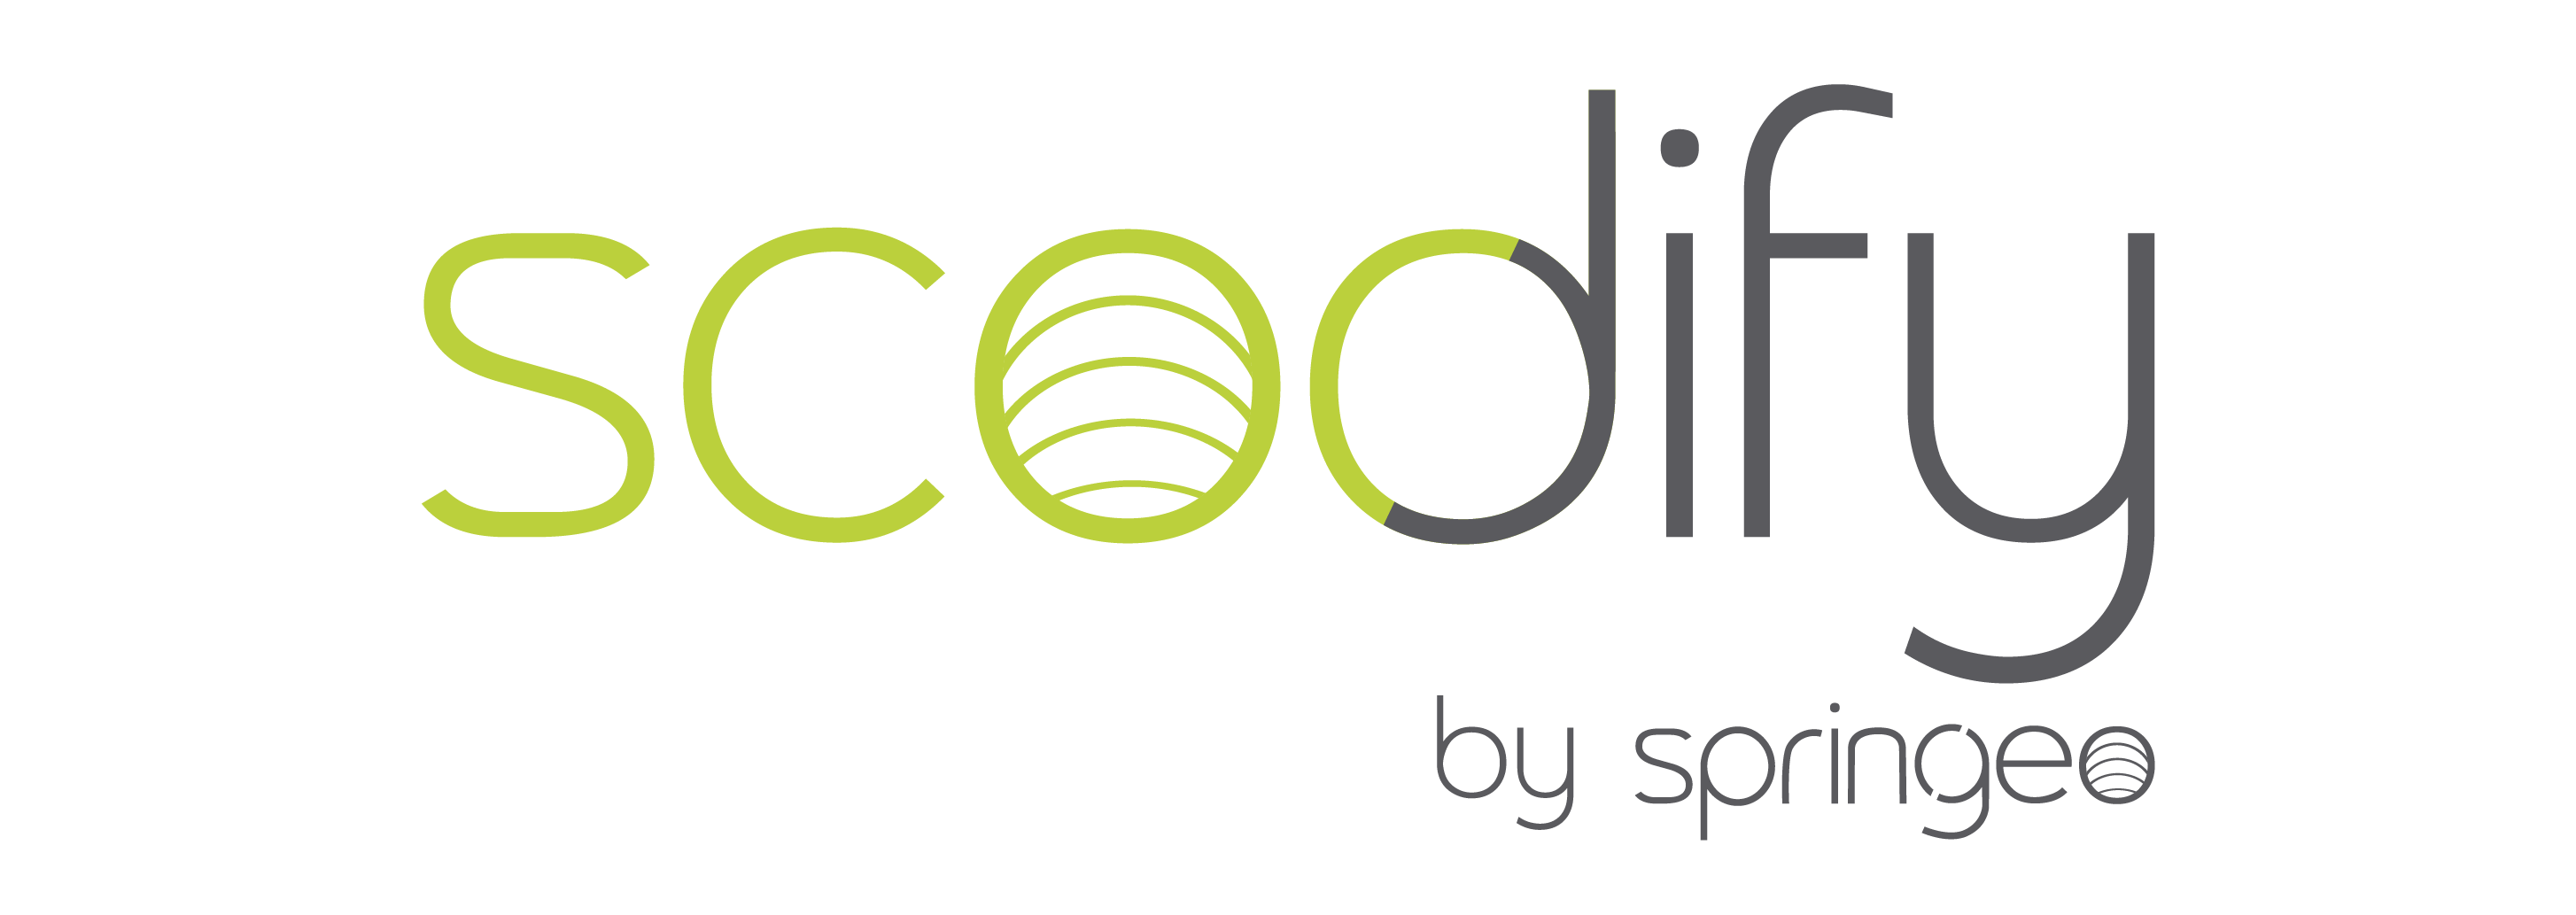 logo_scodify_rvb_deux_coul_by